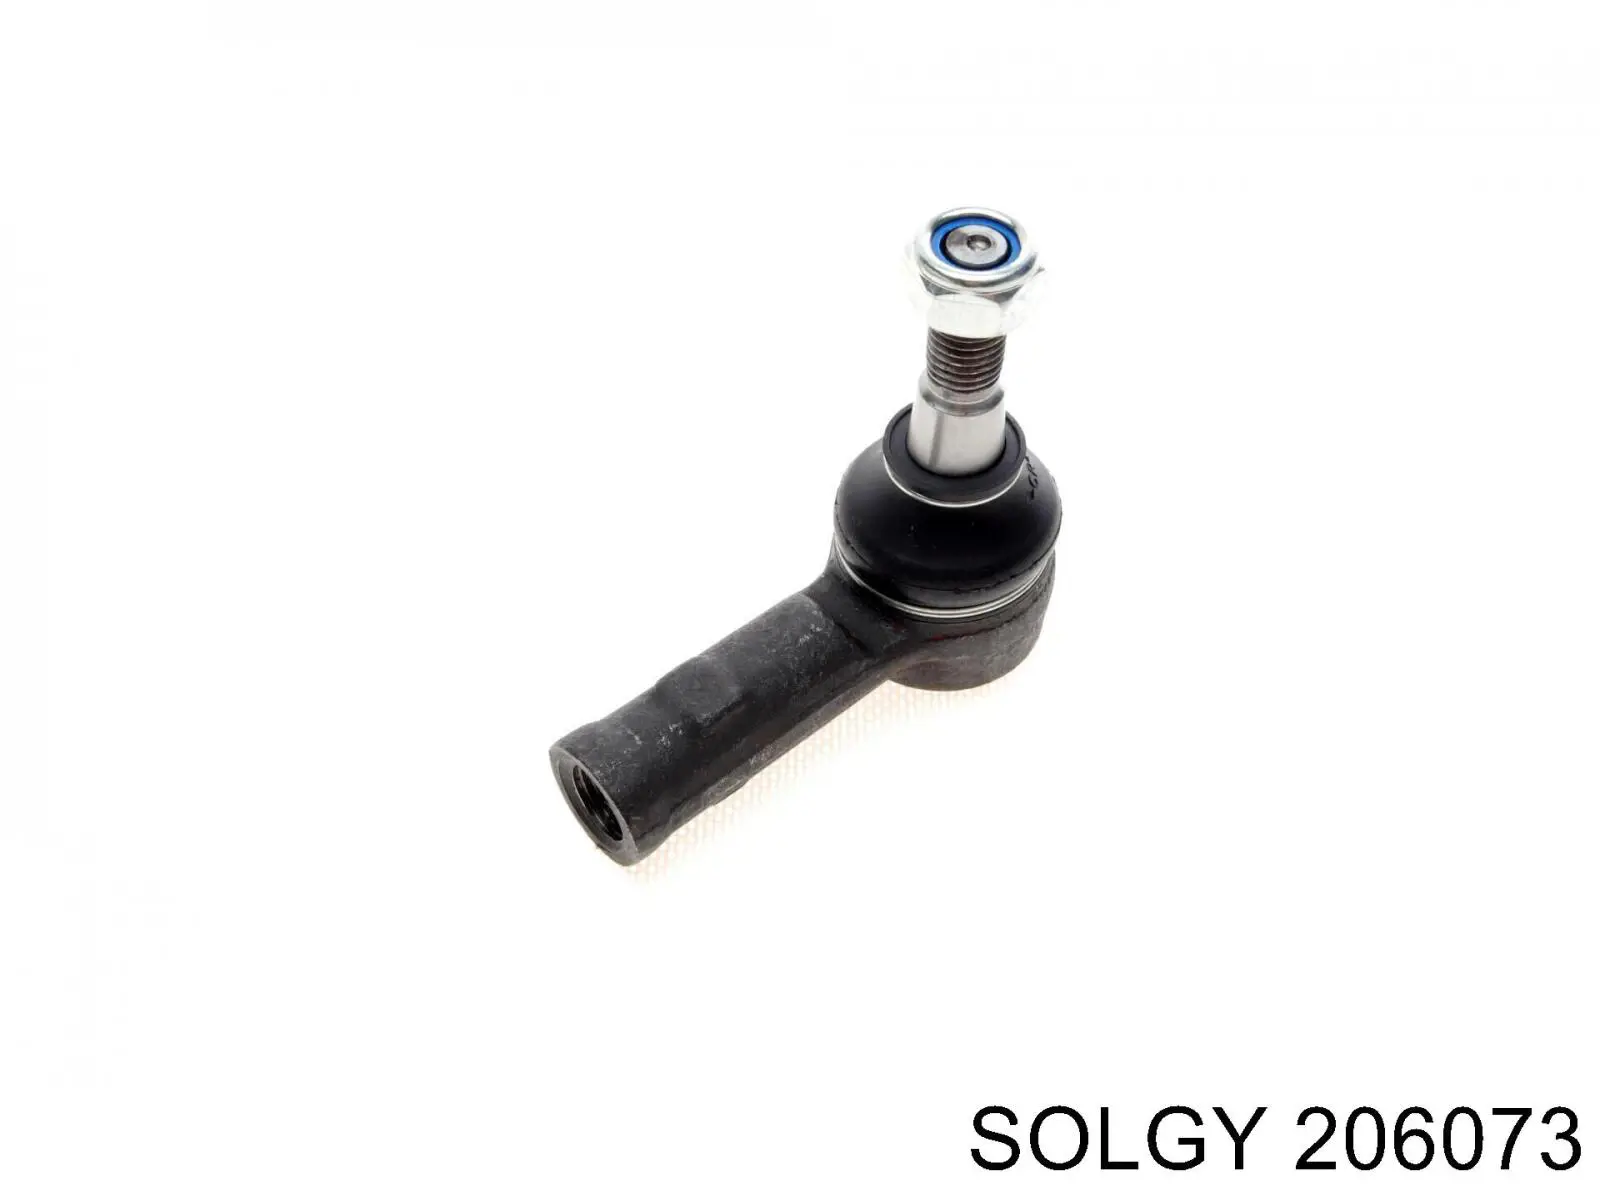 206073 Solgy rótula barra de acoplamiento exterior